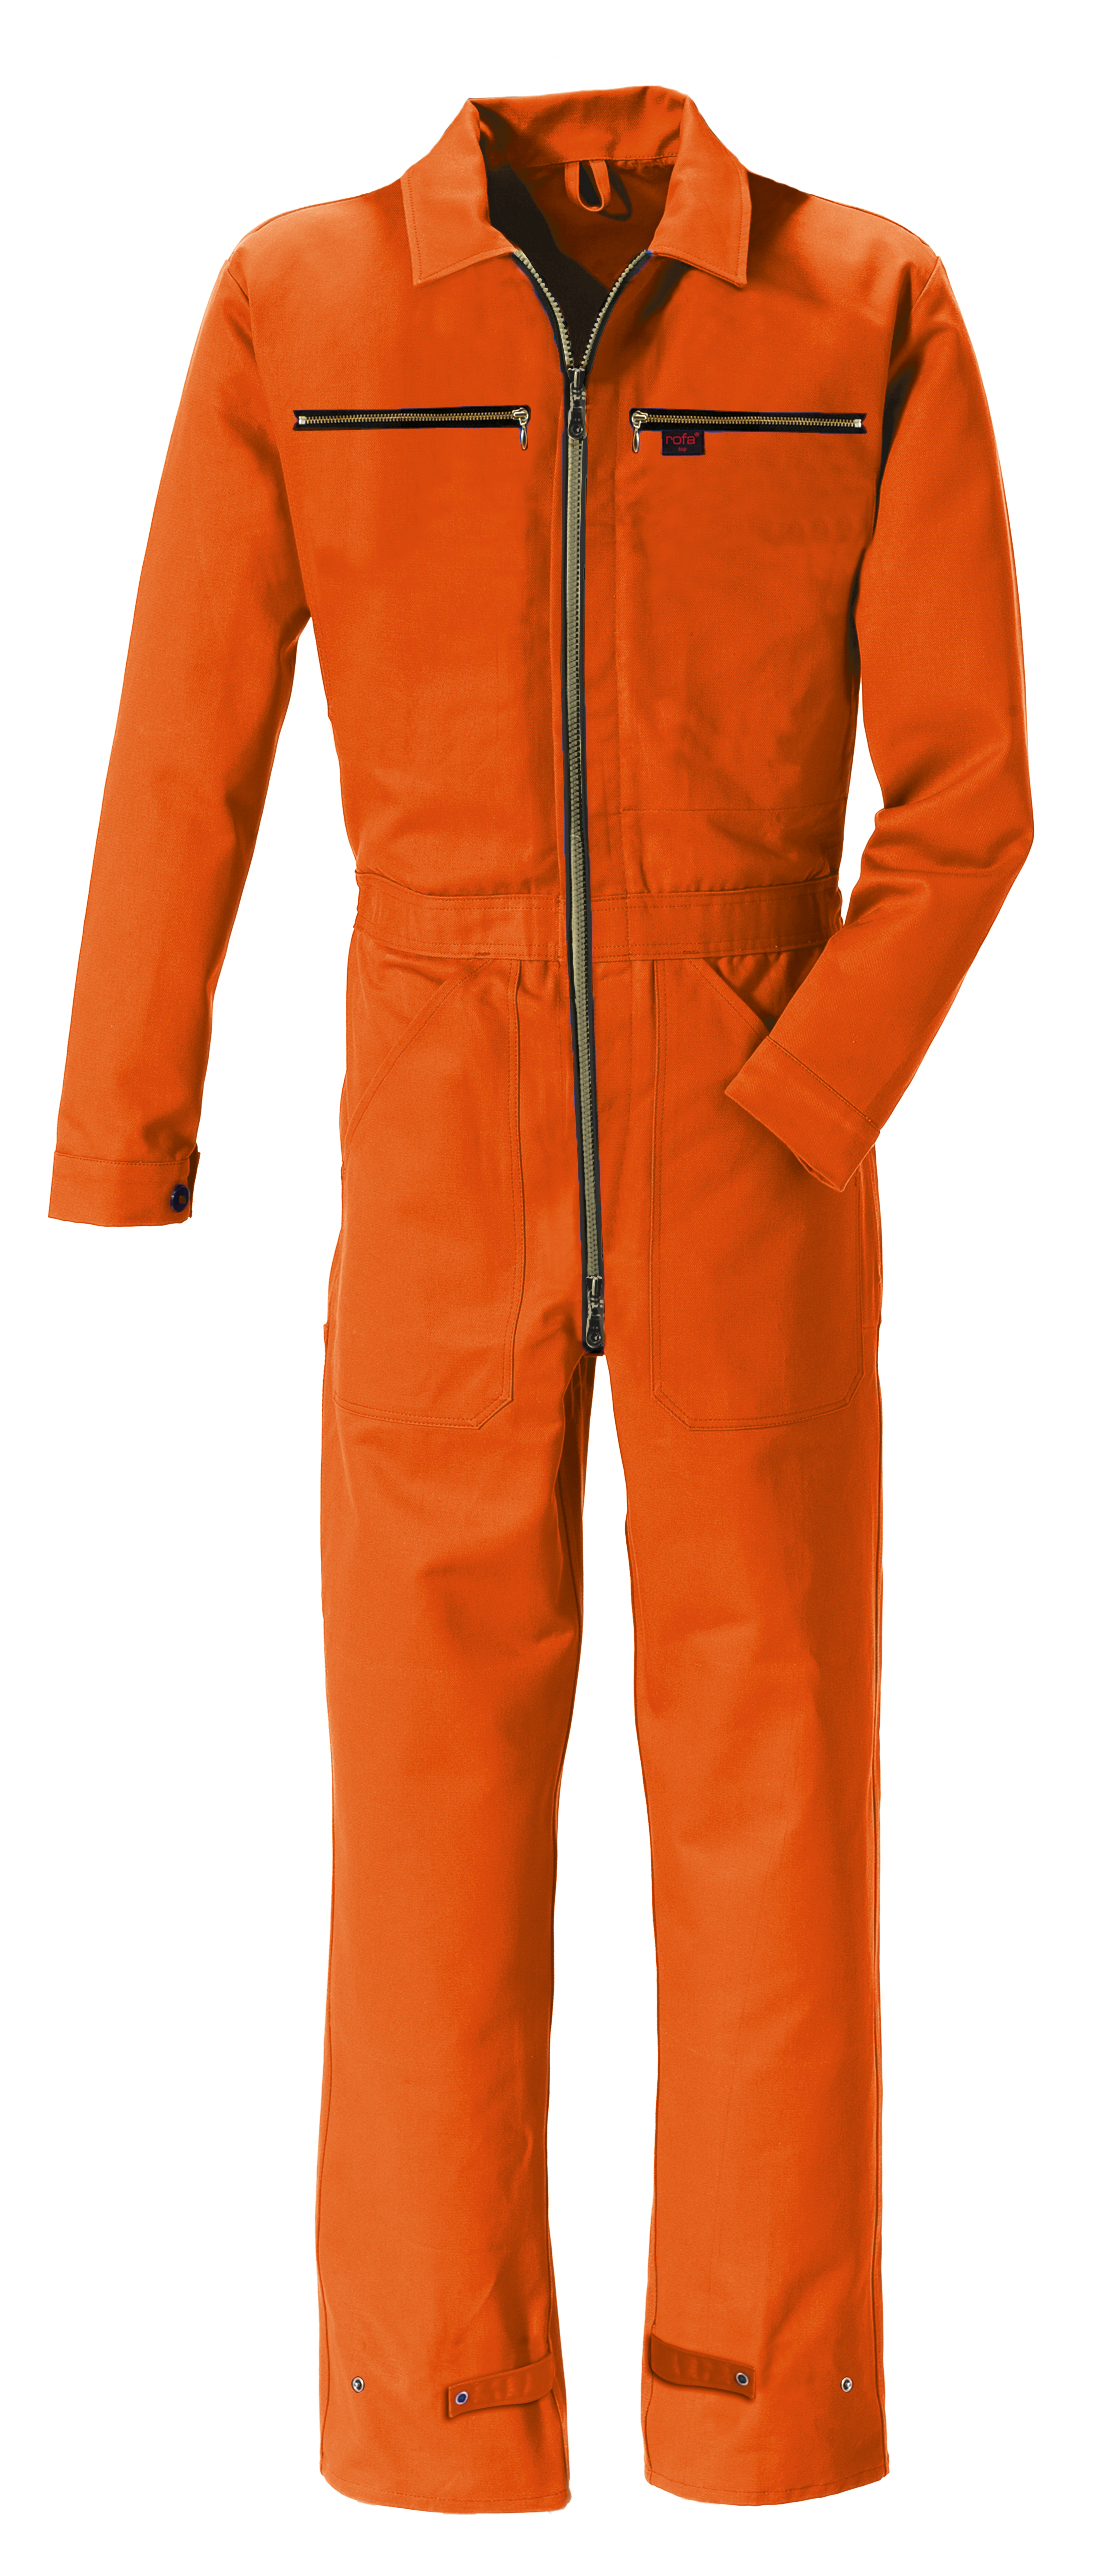 ROFA-Workwear, Arbeits-Berufs-Overall, Rallye-Kombi, ca. 275 g/m², orange